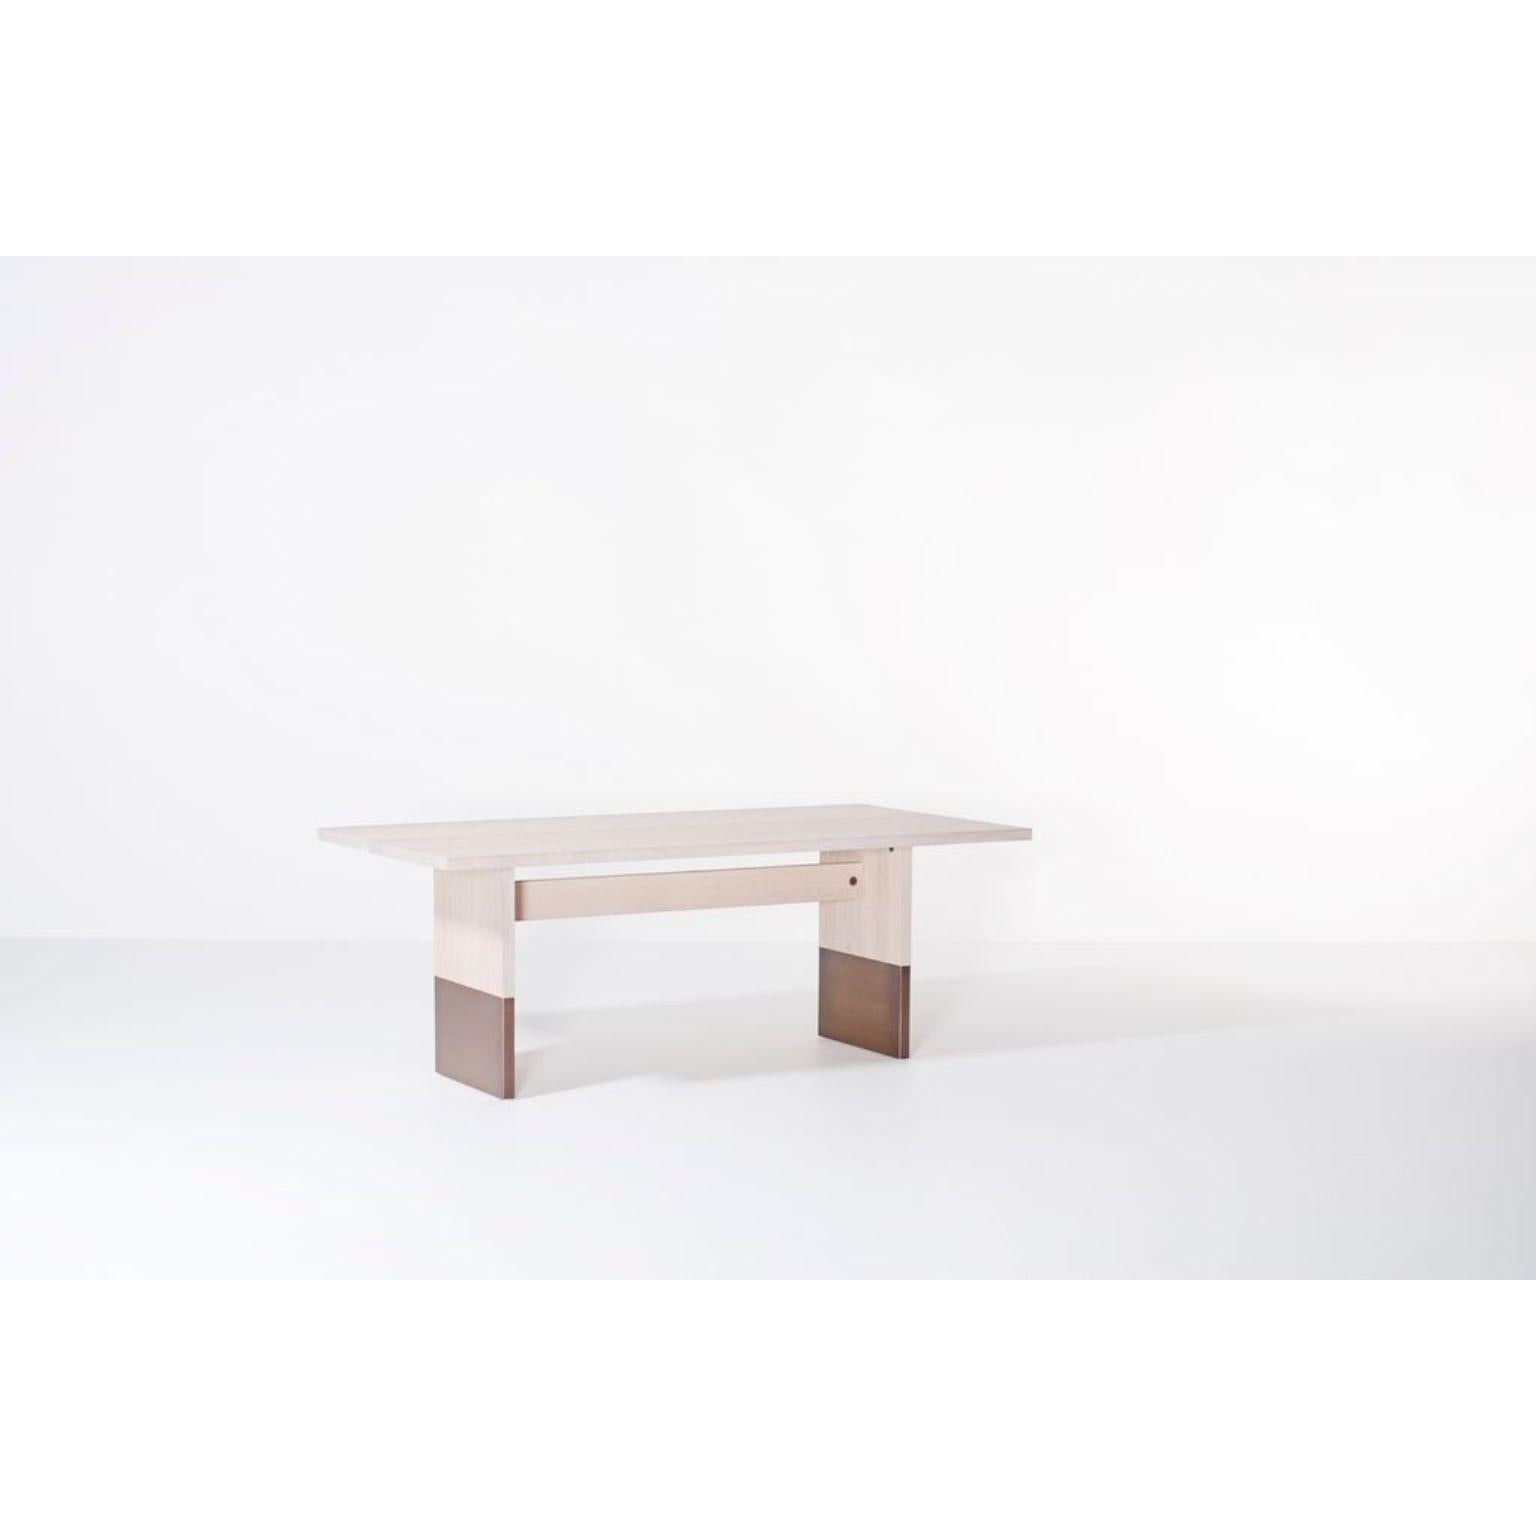 Table de salle à manger rectangulaire Nota Bene par Van Rossum
Dimensions : D200 x W100 x H75 cm
MATERIAL : Chêne, laiton.

Le bois est disponible dans toutes les couleurs standard de Van Rossum, ou dans une finition assortie à l'échantillon du